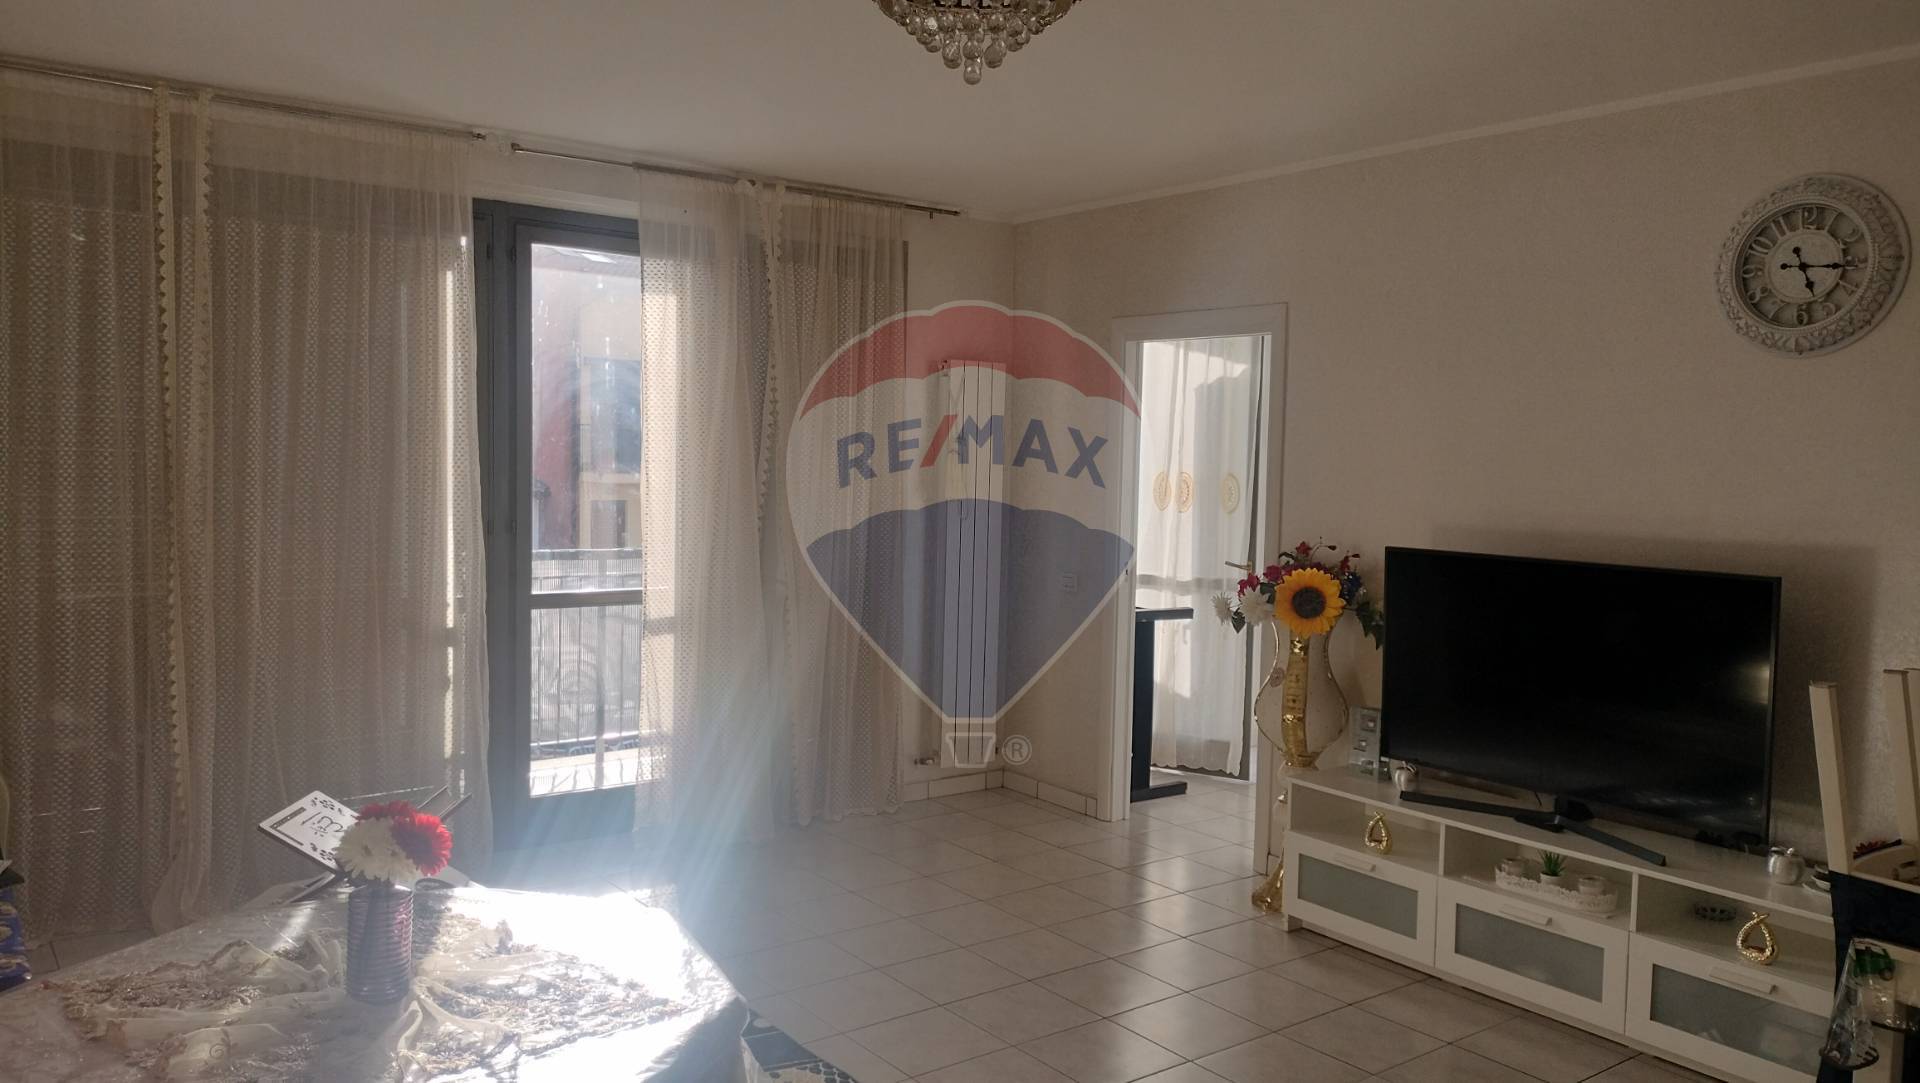 Appartamento in vendita a Miradolo Terme, 6 locali, prezzo € 150.000 | PortaleAgenzieImmobiliari.it